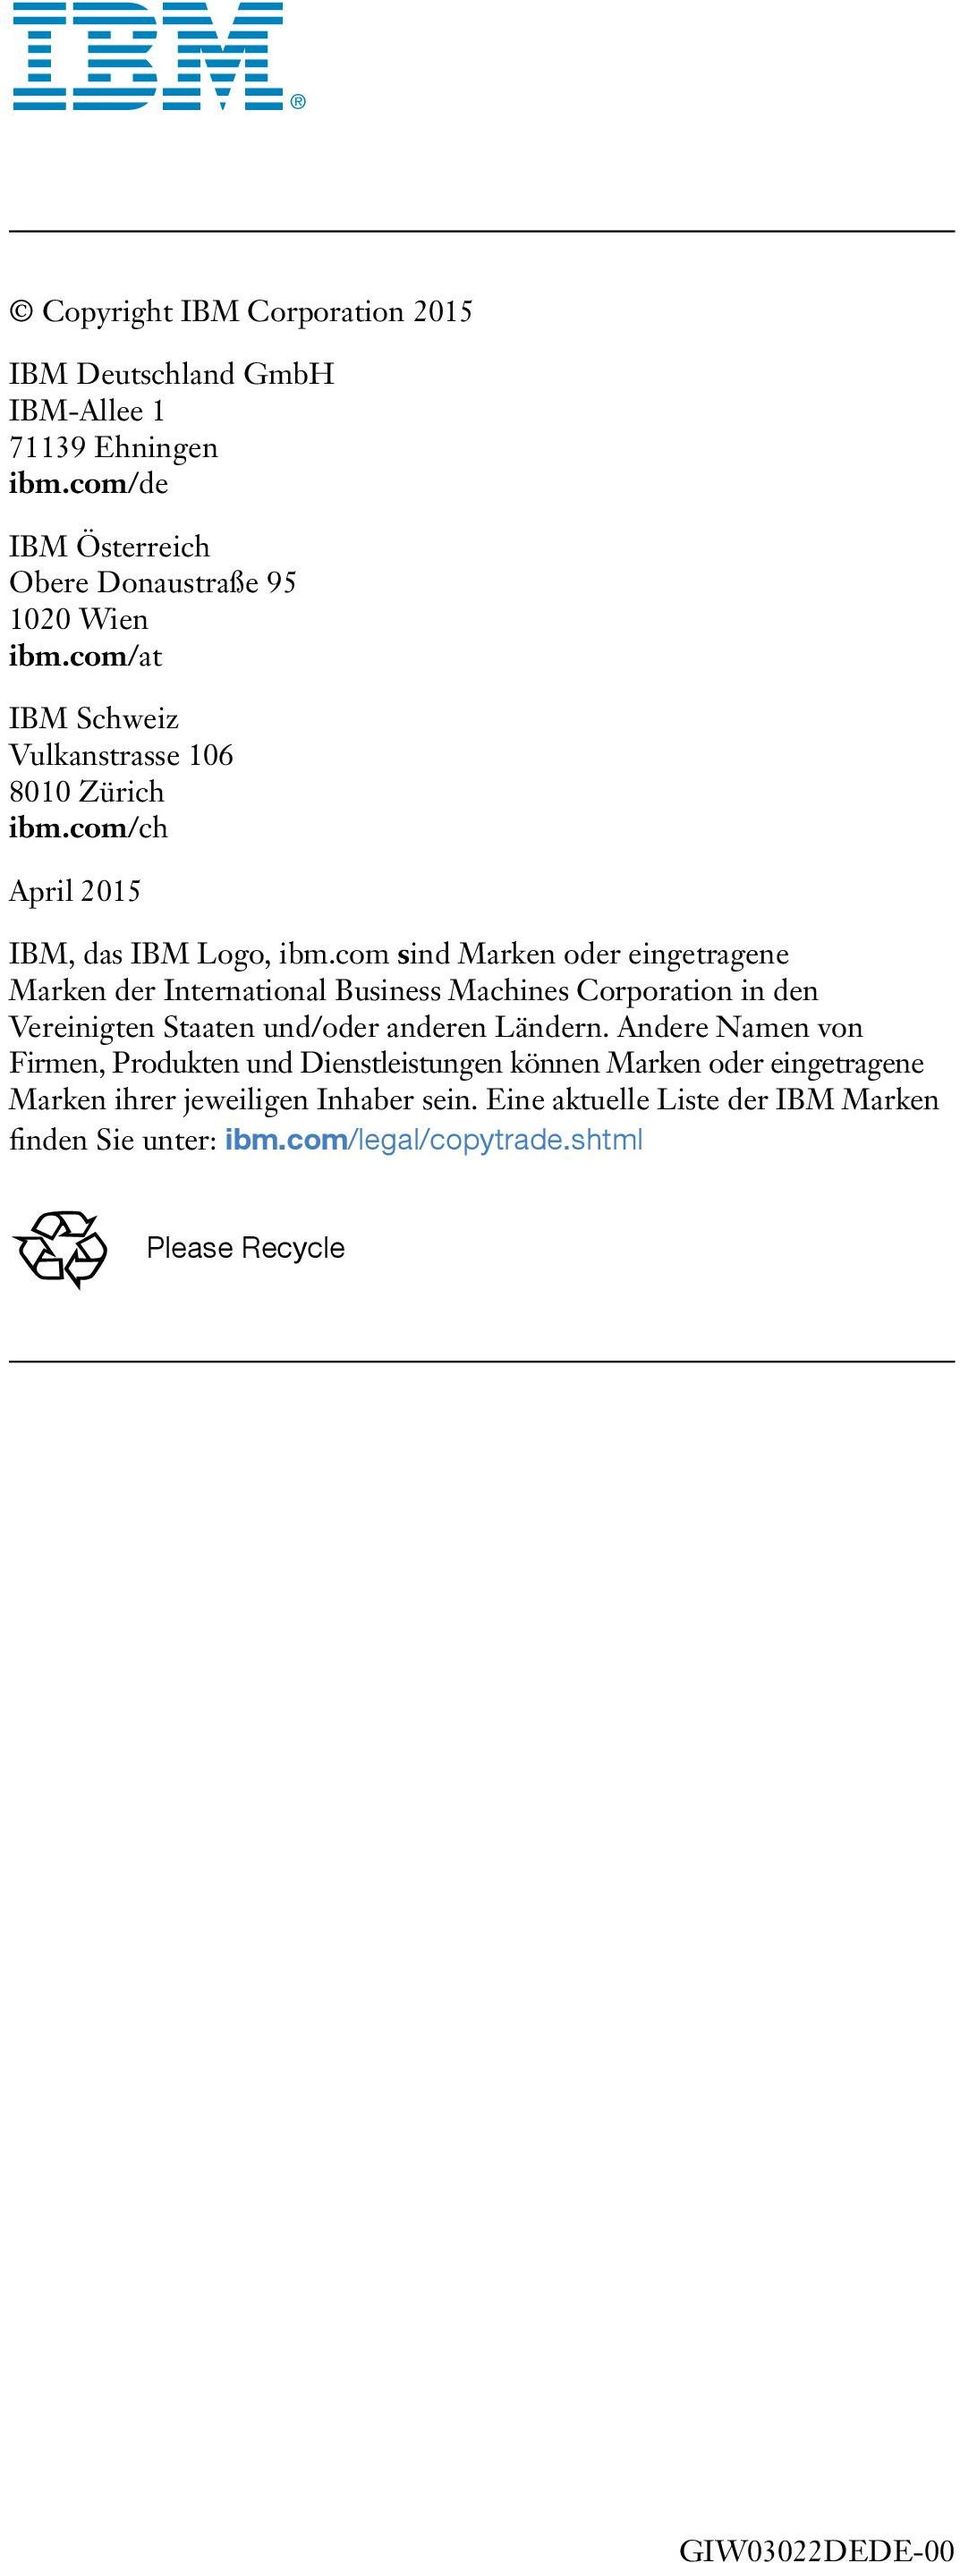 com sind Marken oder eingetragene Marken der International Business Machines Corporation in den Vereinigten Staaten und/oder anderen Ländern.